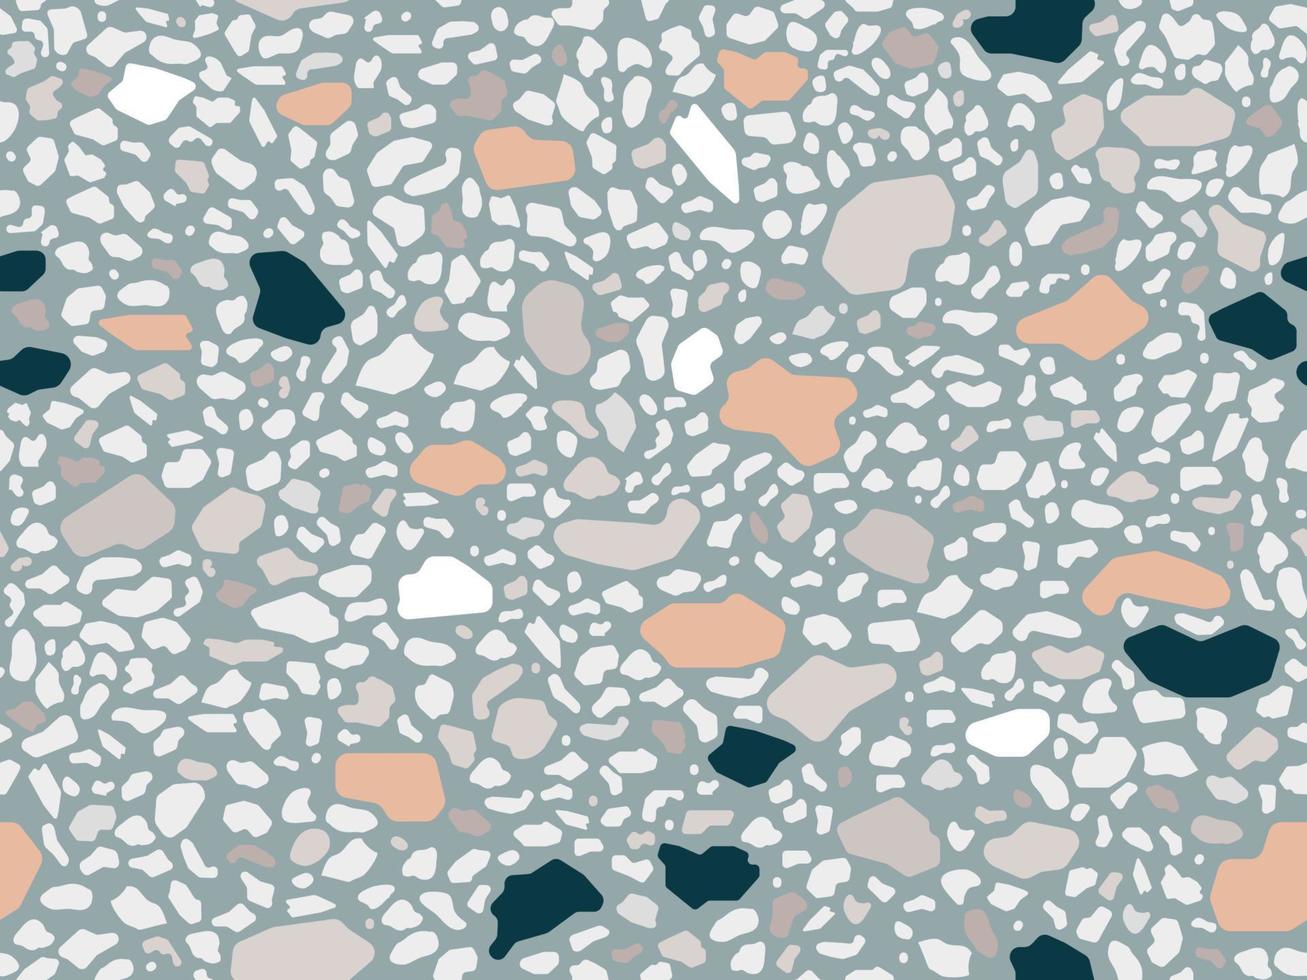 pavimento in terrazzo marmo modello artigianale senza cuciture. materiale veneziano tradizionale. rocce di granito e quarzo e spruzzi mescolati su superficie levigata. sfondo vettoriale astratto per progetti di architettura